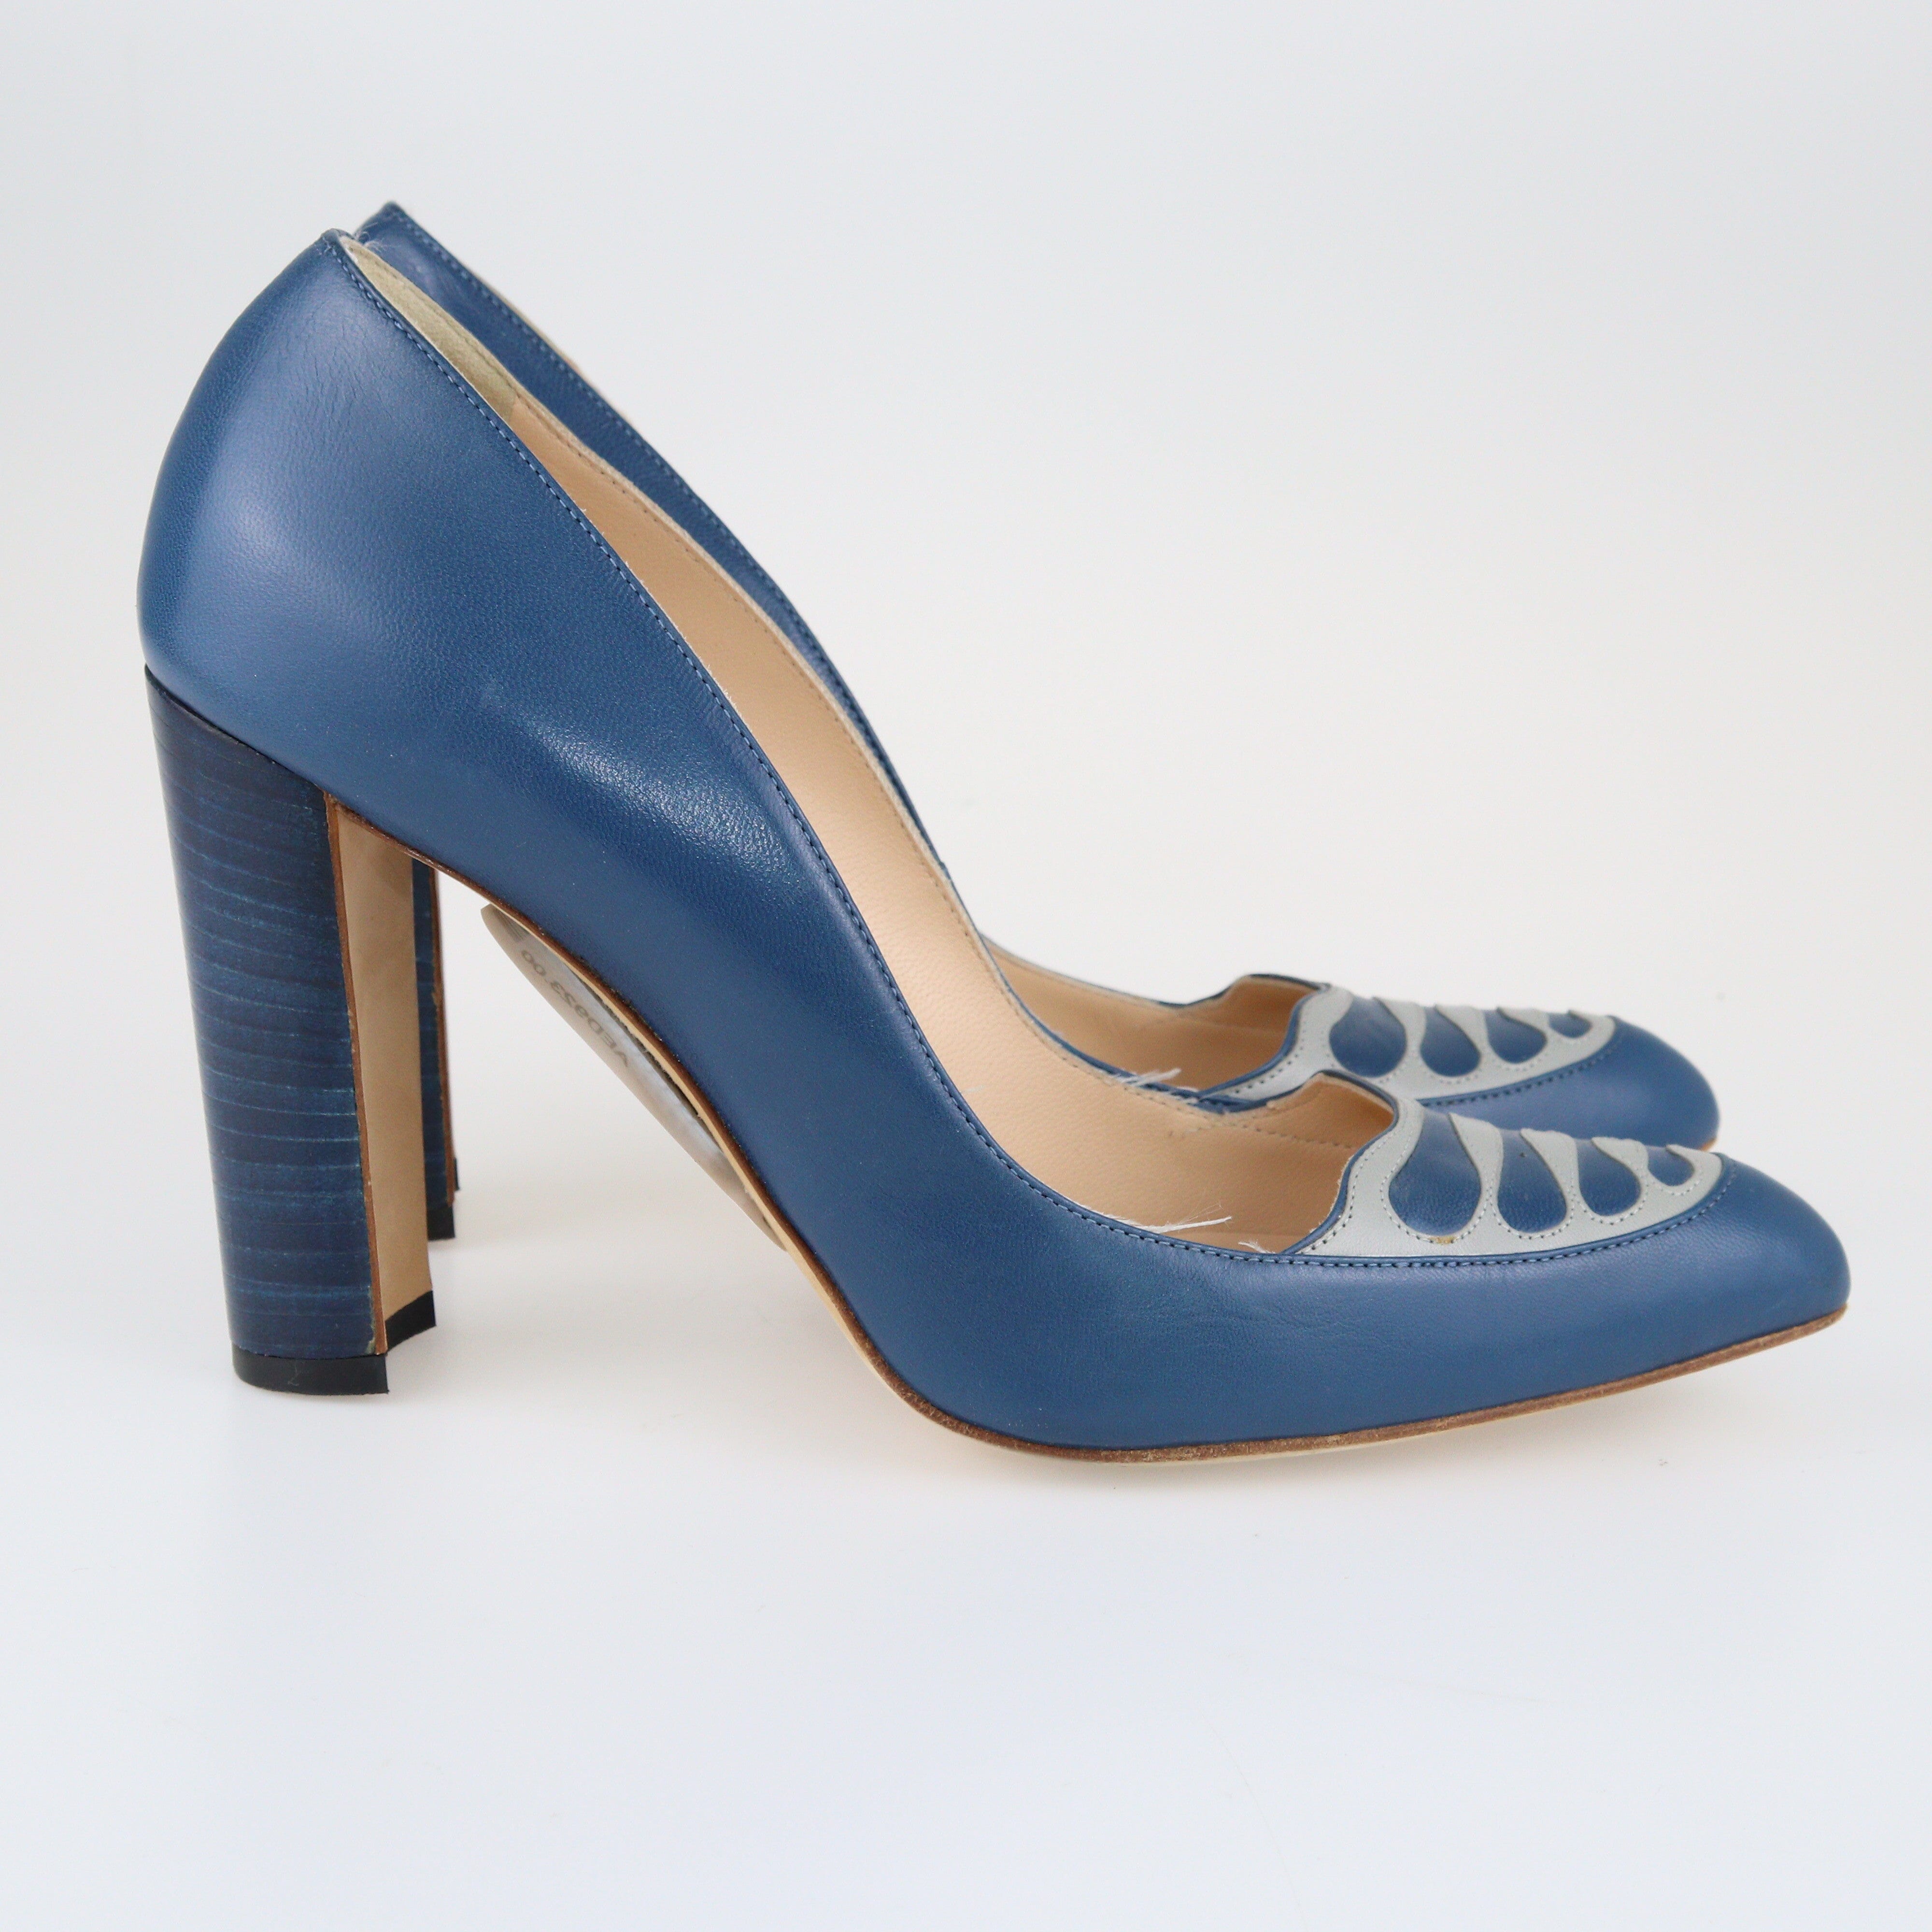 Blue/Grey Pumps Shoes Manolo Blahnik 